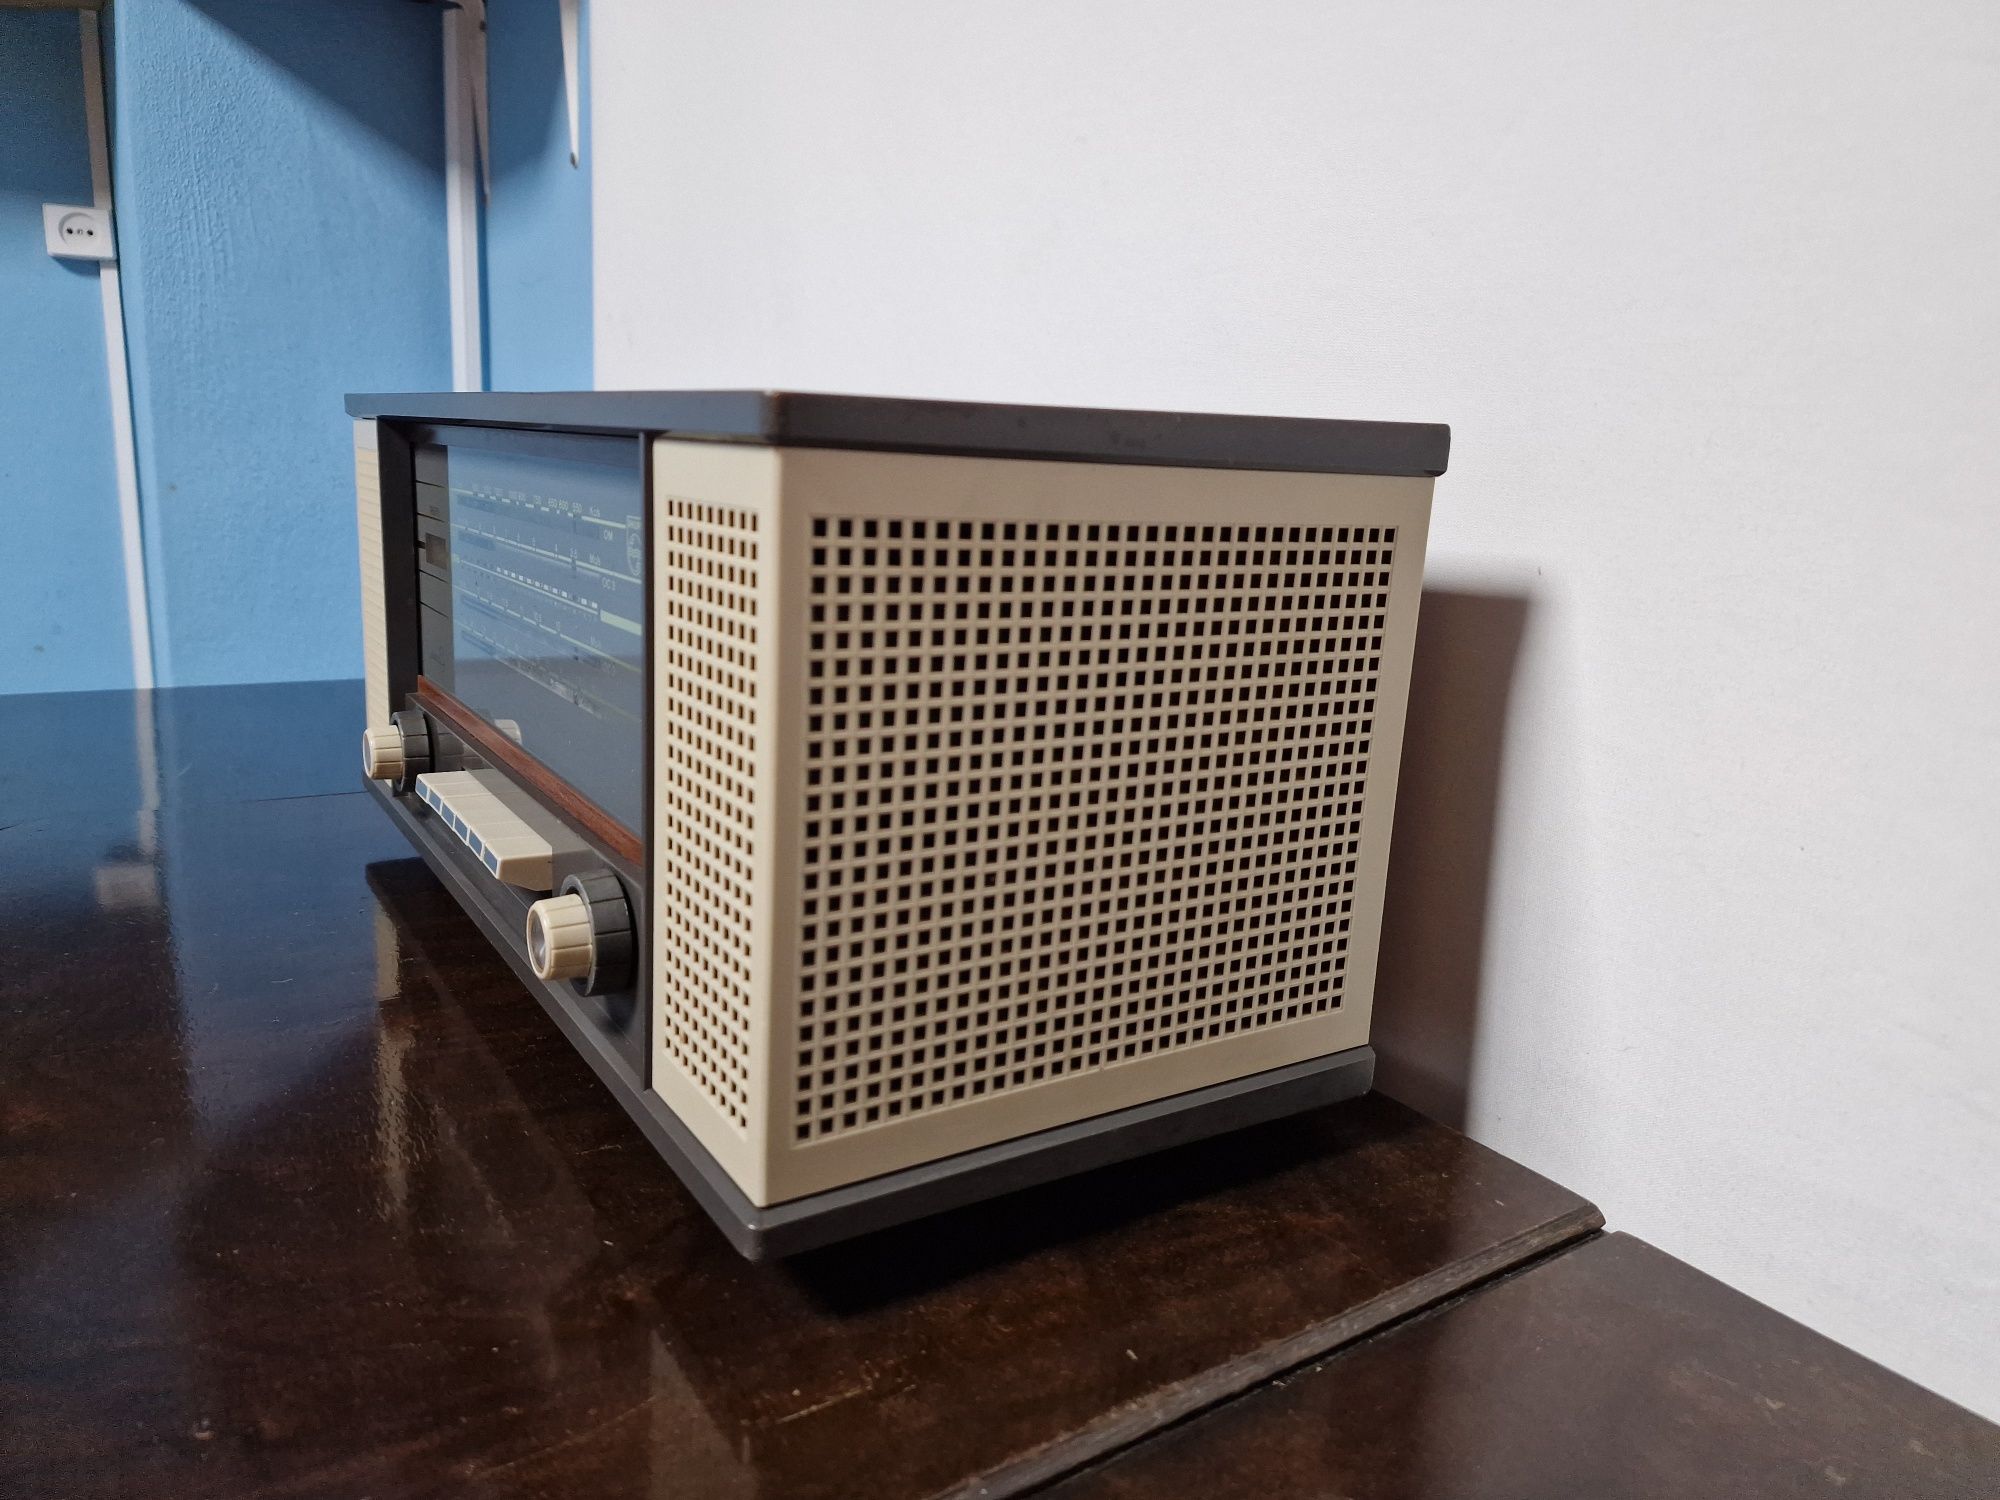 Rádio antigo reparado Philips